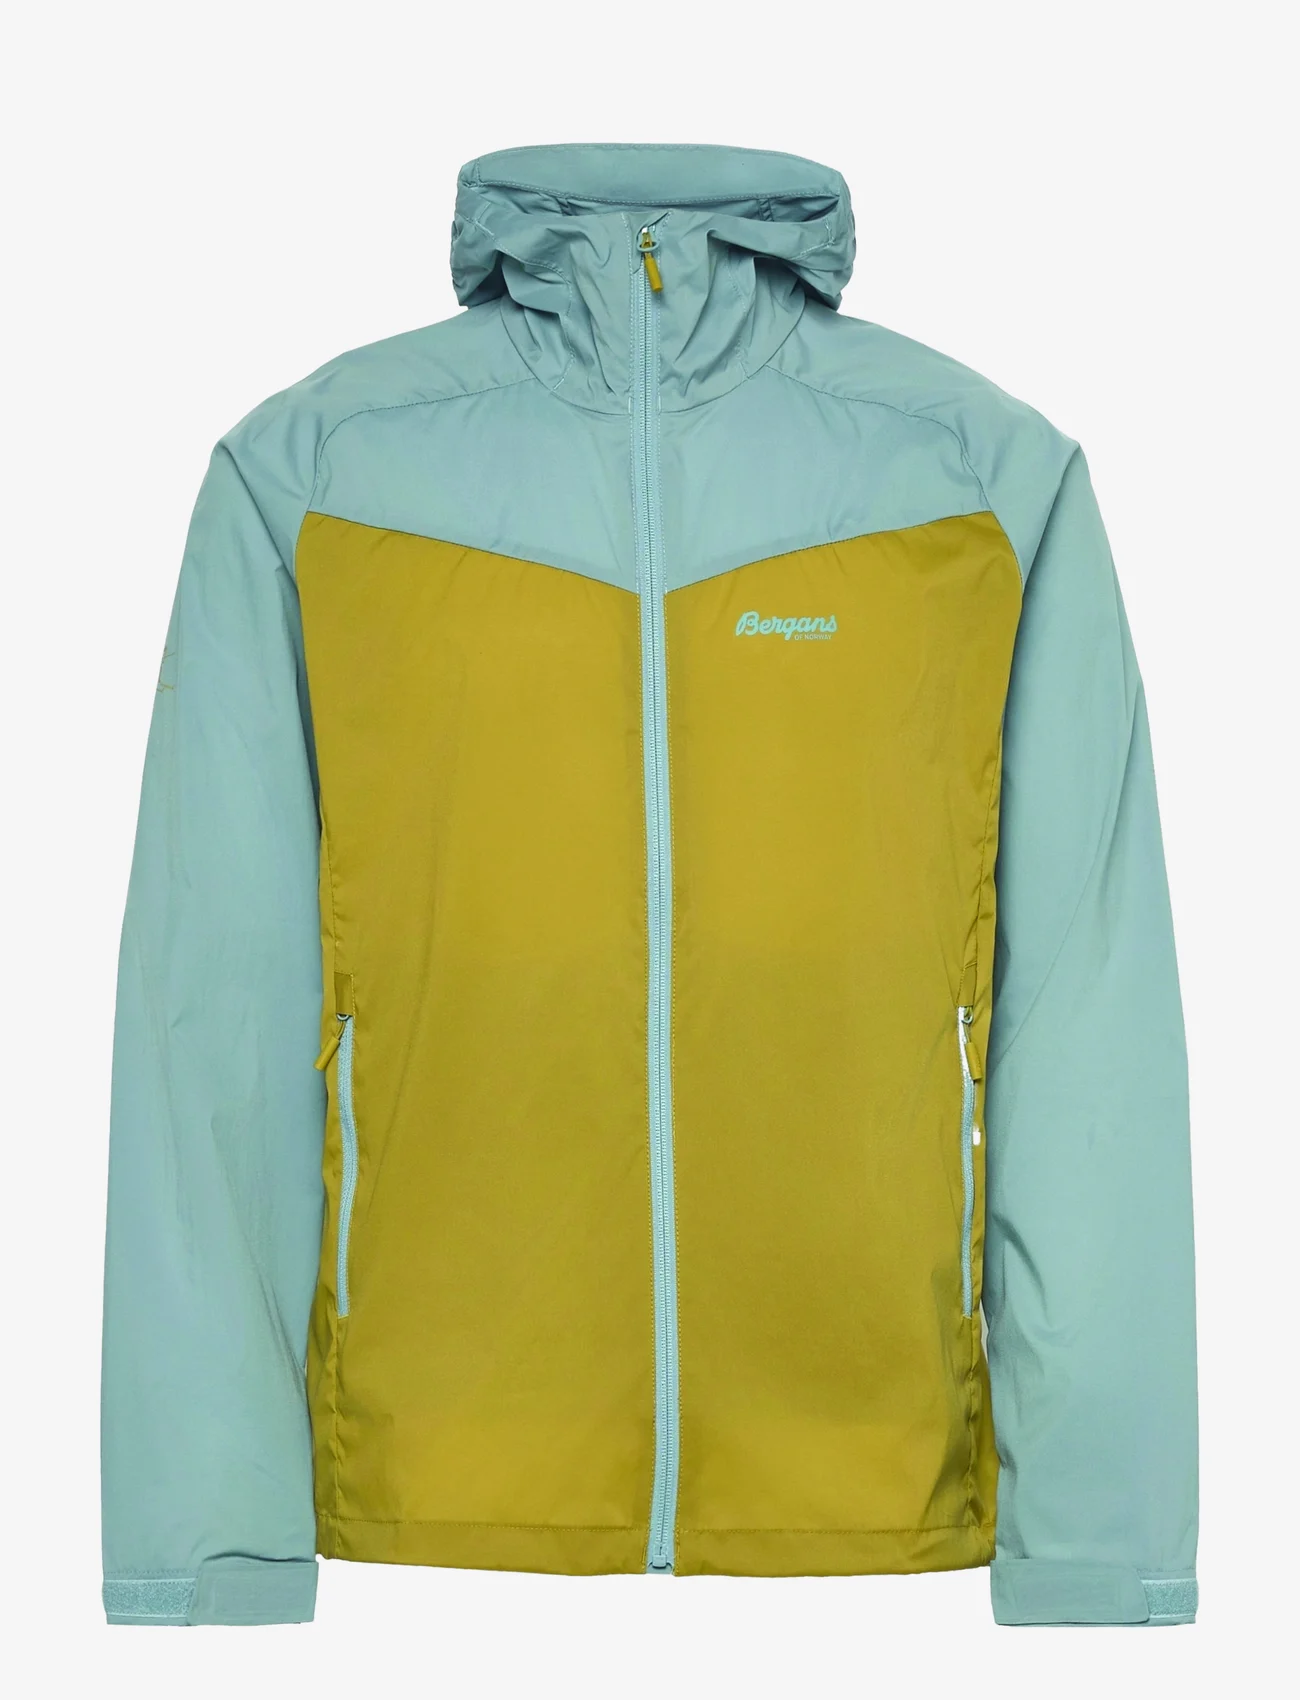 Bergans - Microlight Jacket - outdoor- & regenjacken - olive green/smoke blue - 0